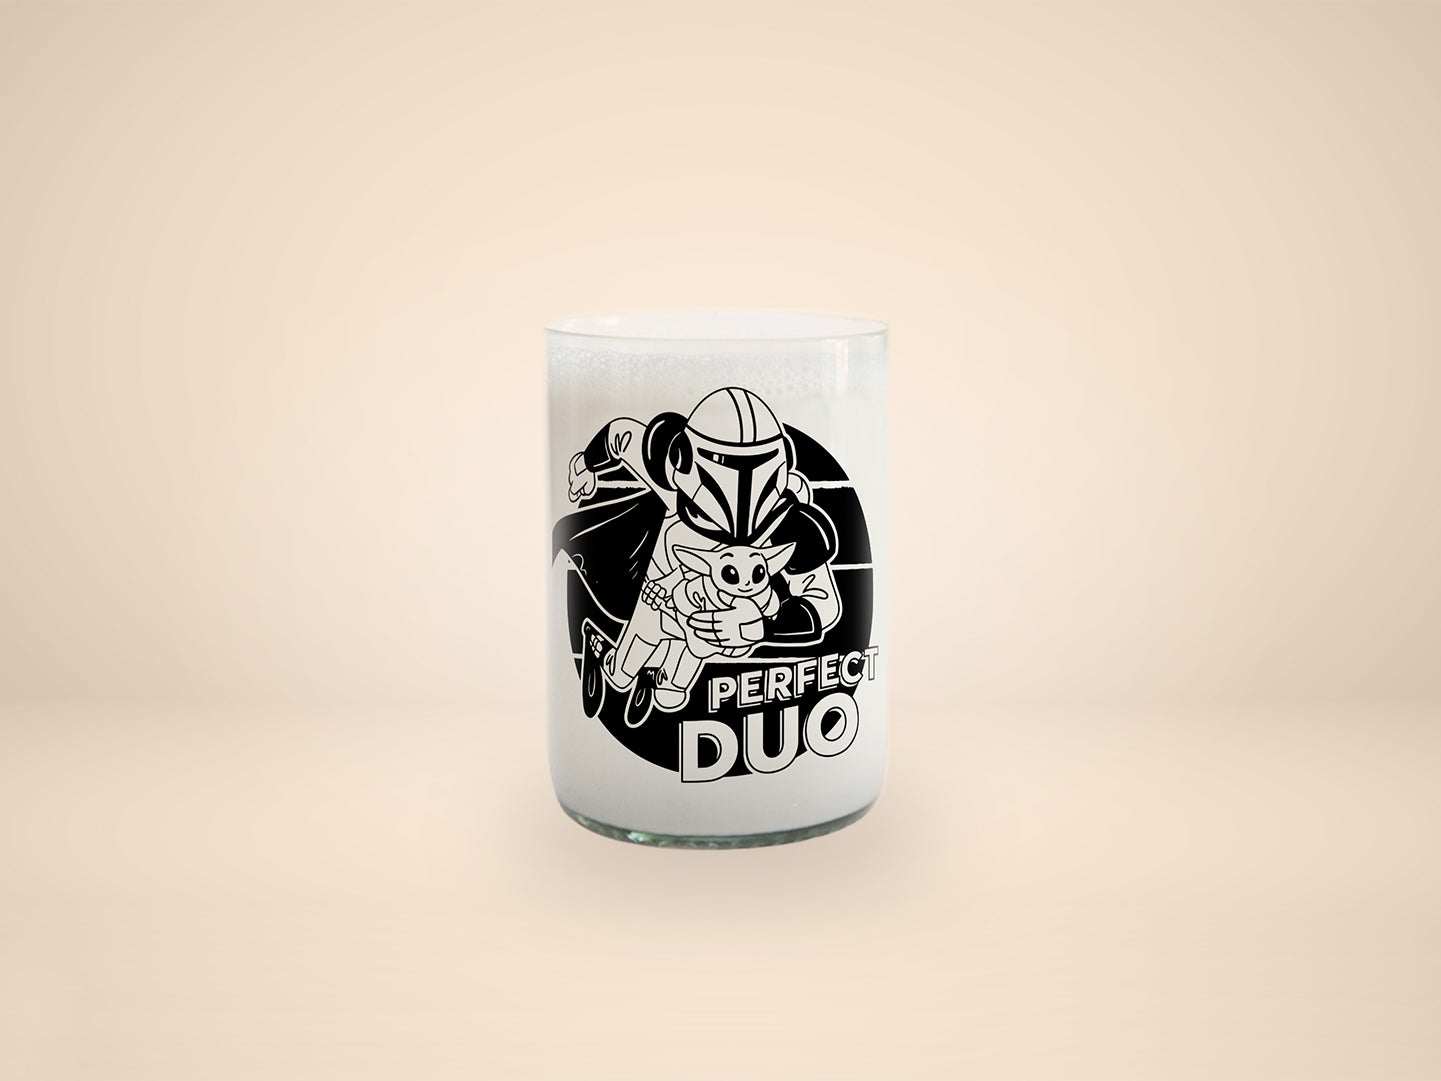 Vaso perfect duo de Star Wars - Grogu color transparente 330ml